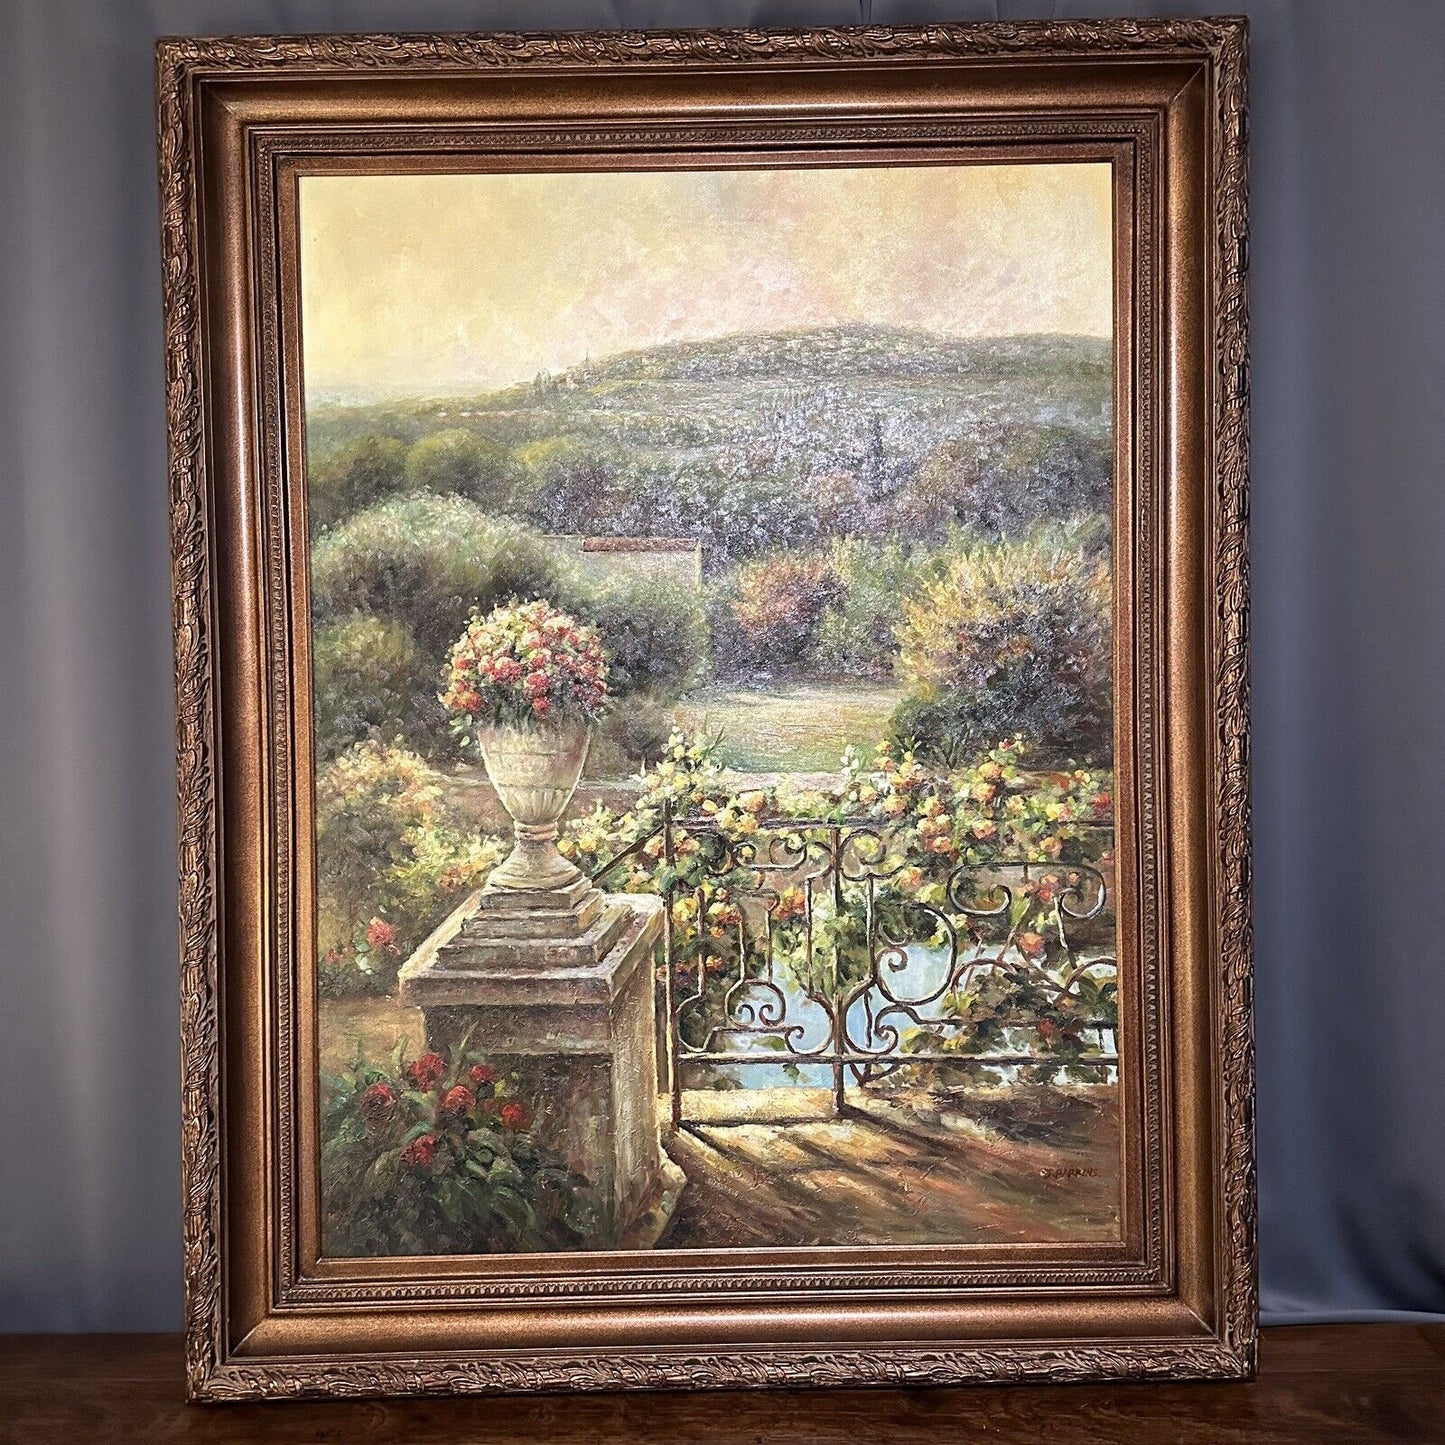 Original Oil Painting J. Barkins Mediterranean Landscape Signed Framed Large 4ft